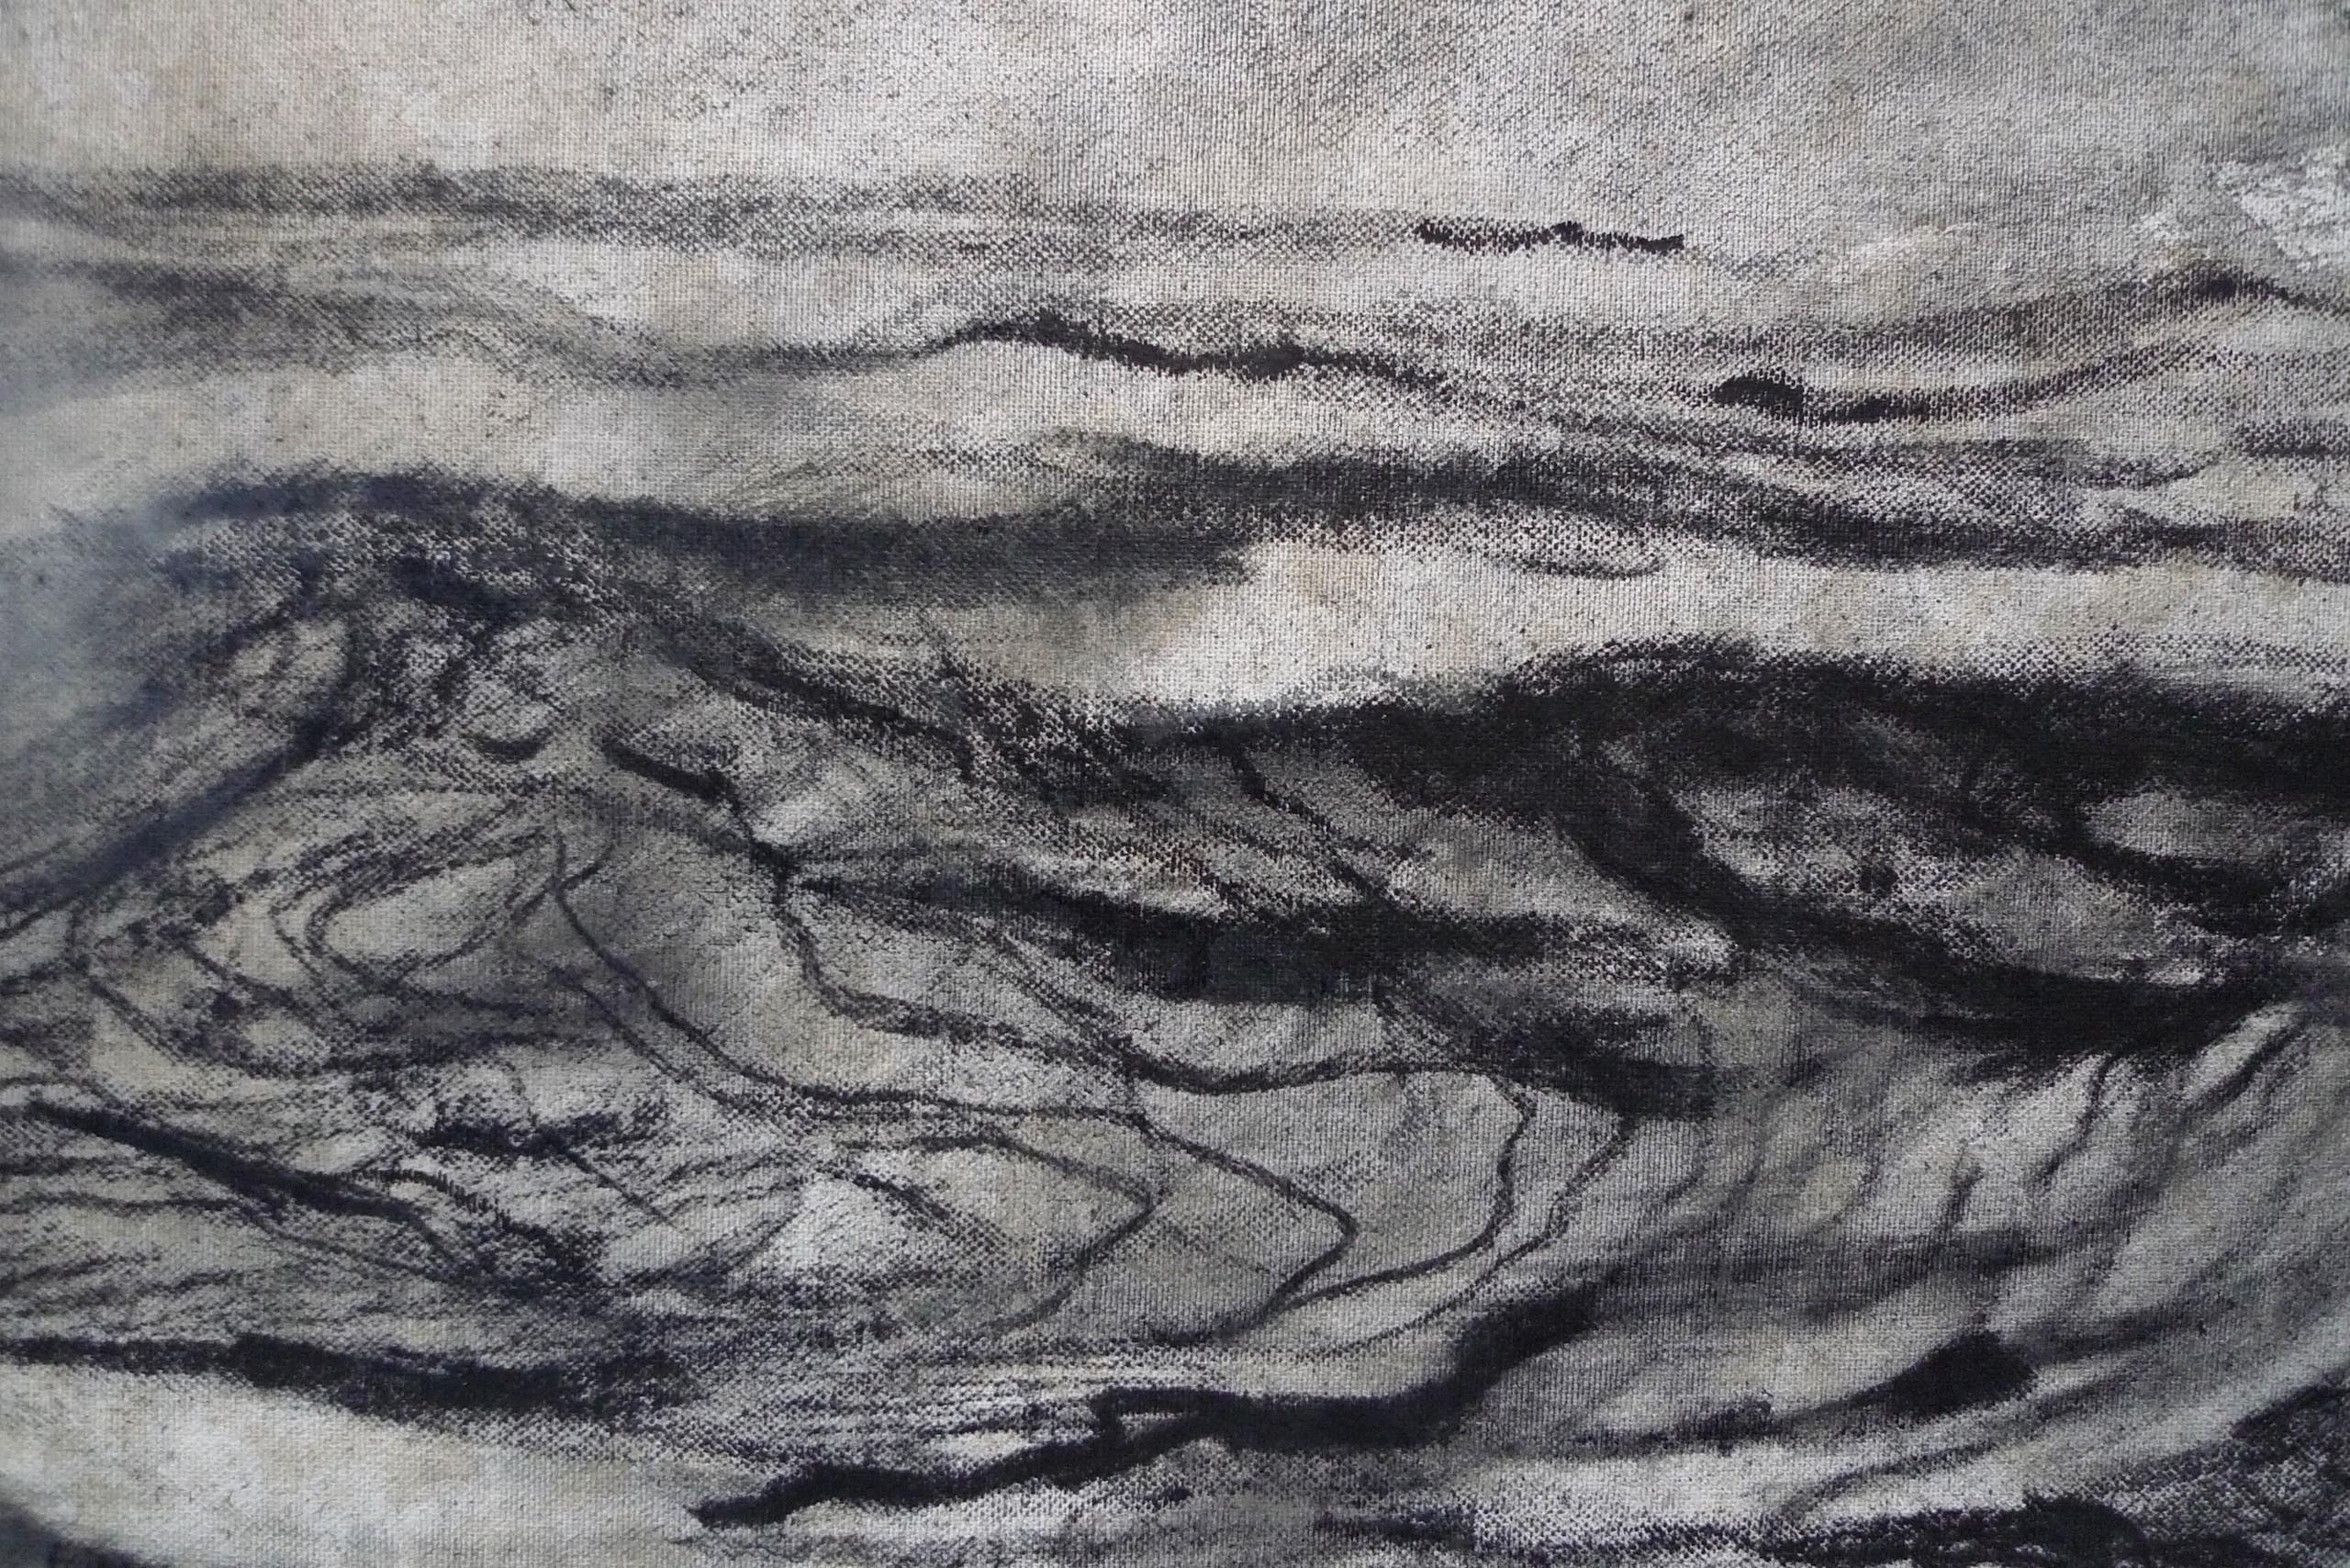 Alma by Franco Salas Borquez - Black & white painting, ocean waves, seascape For Sale 2